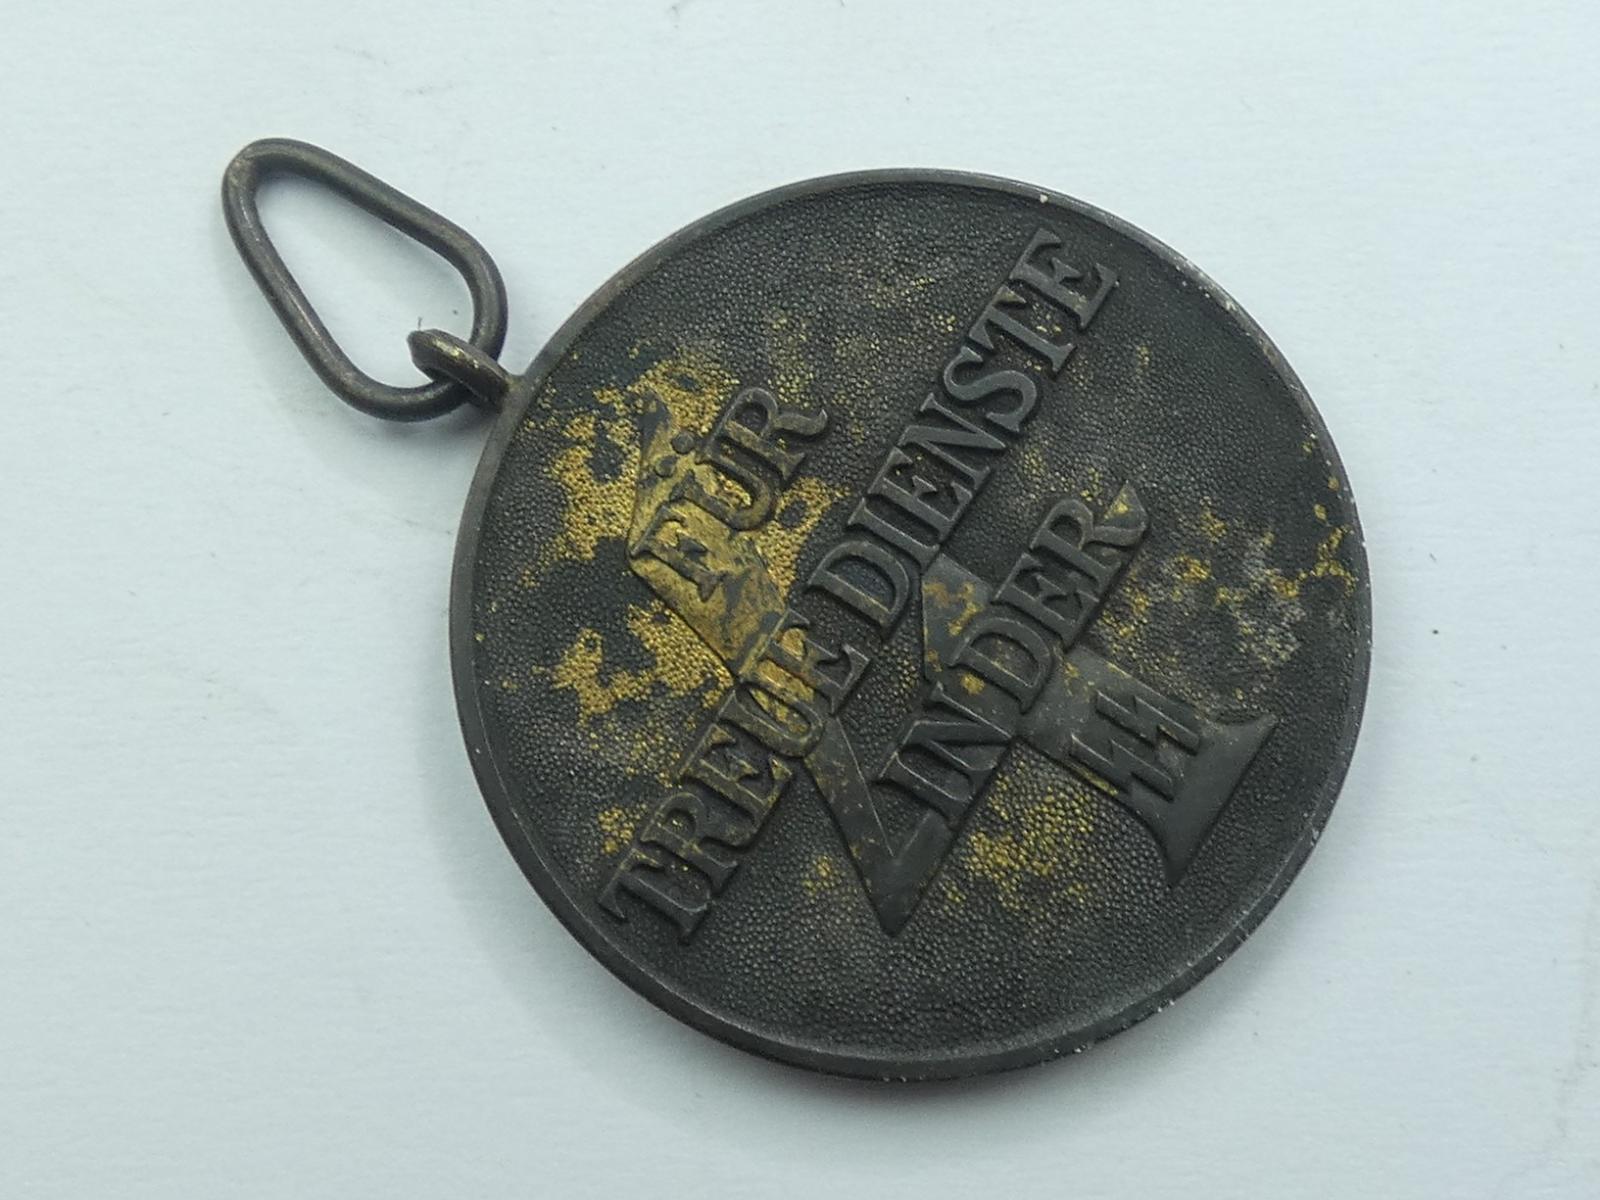 Medaila za dlhoročnú službu v SS - 4 roky - Vojenské zberateľské predmety